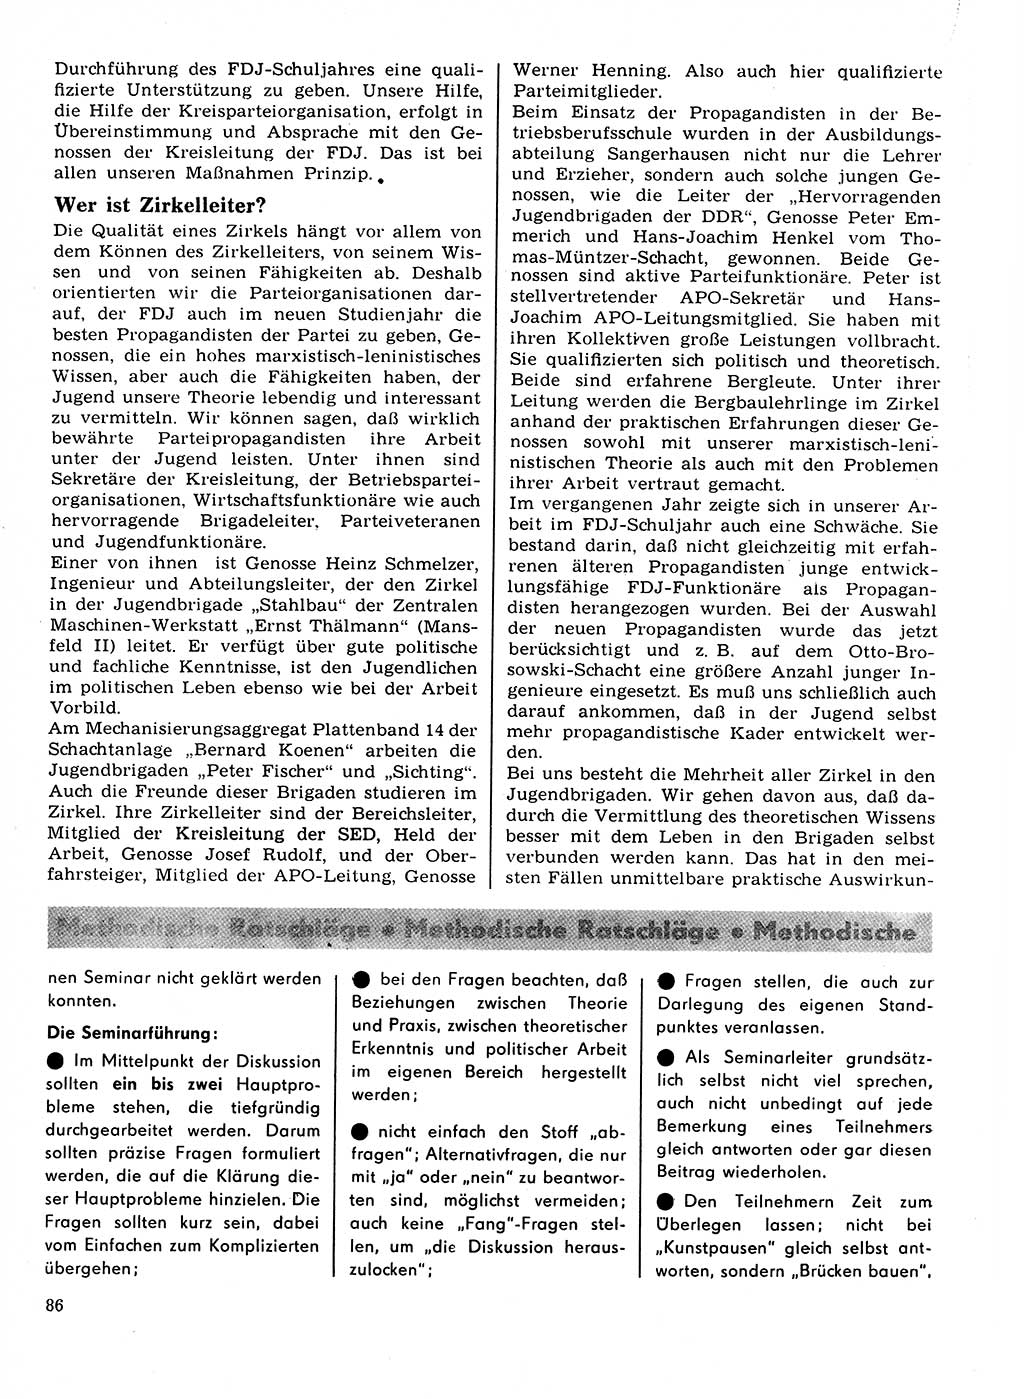 Neuer Weg (NW), Organ des Zentralkomitees (ZK) der SED (Sozialistische Einheitspartei Deutschlands) für Fragen des Parteilebens, 22. Jahrgang [Deutsche Demokratische Republik (DDR)] 1967, Seite 86 (NW ZK SED DDR 1967, S. 86)